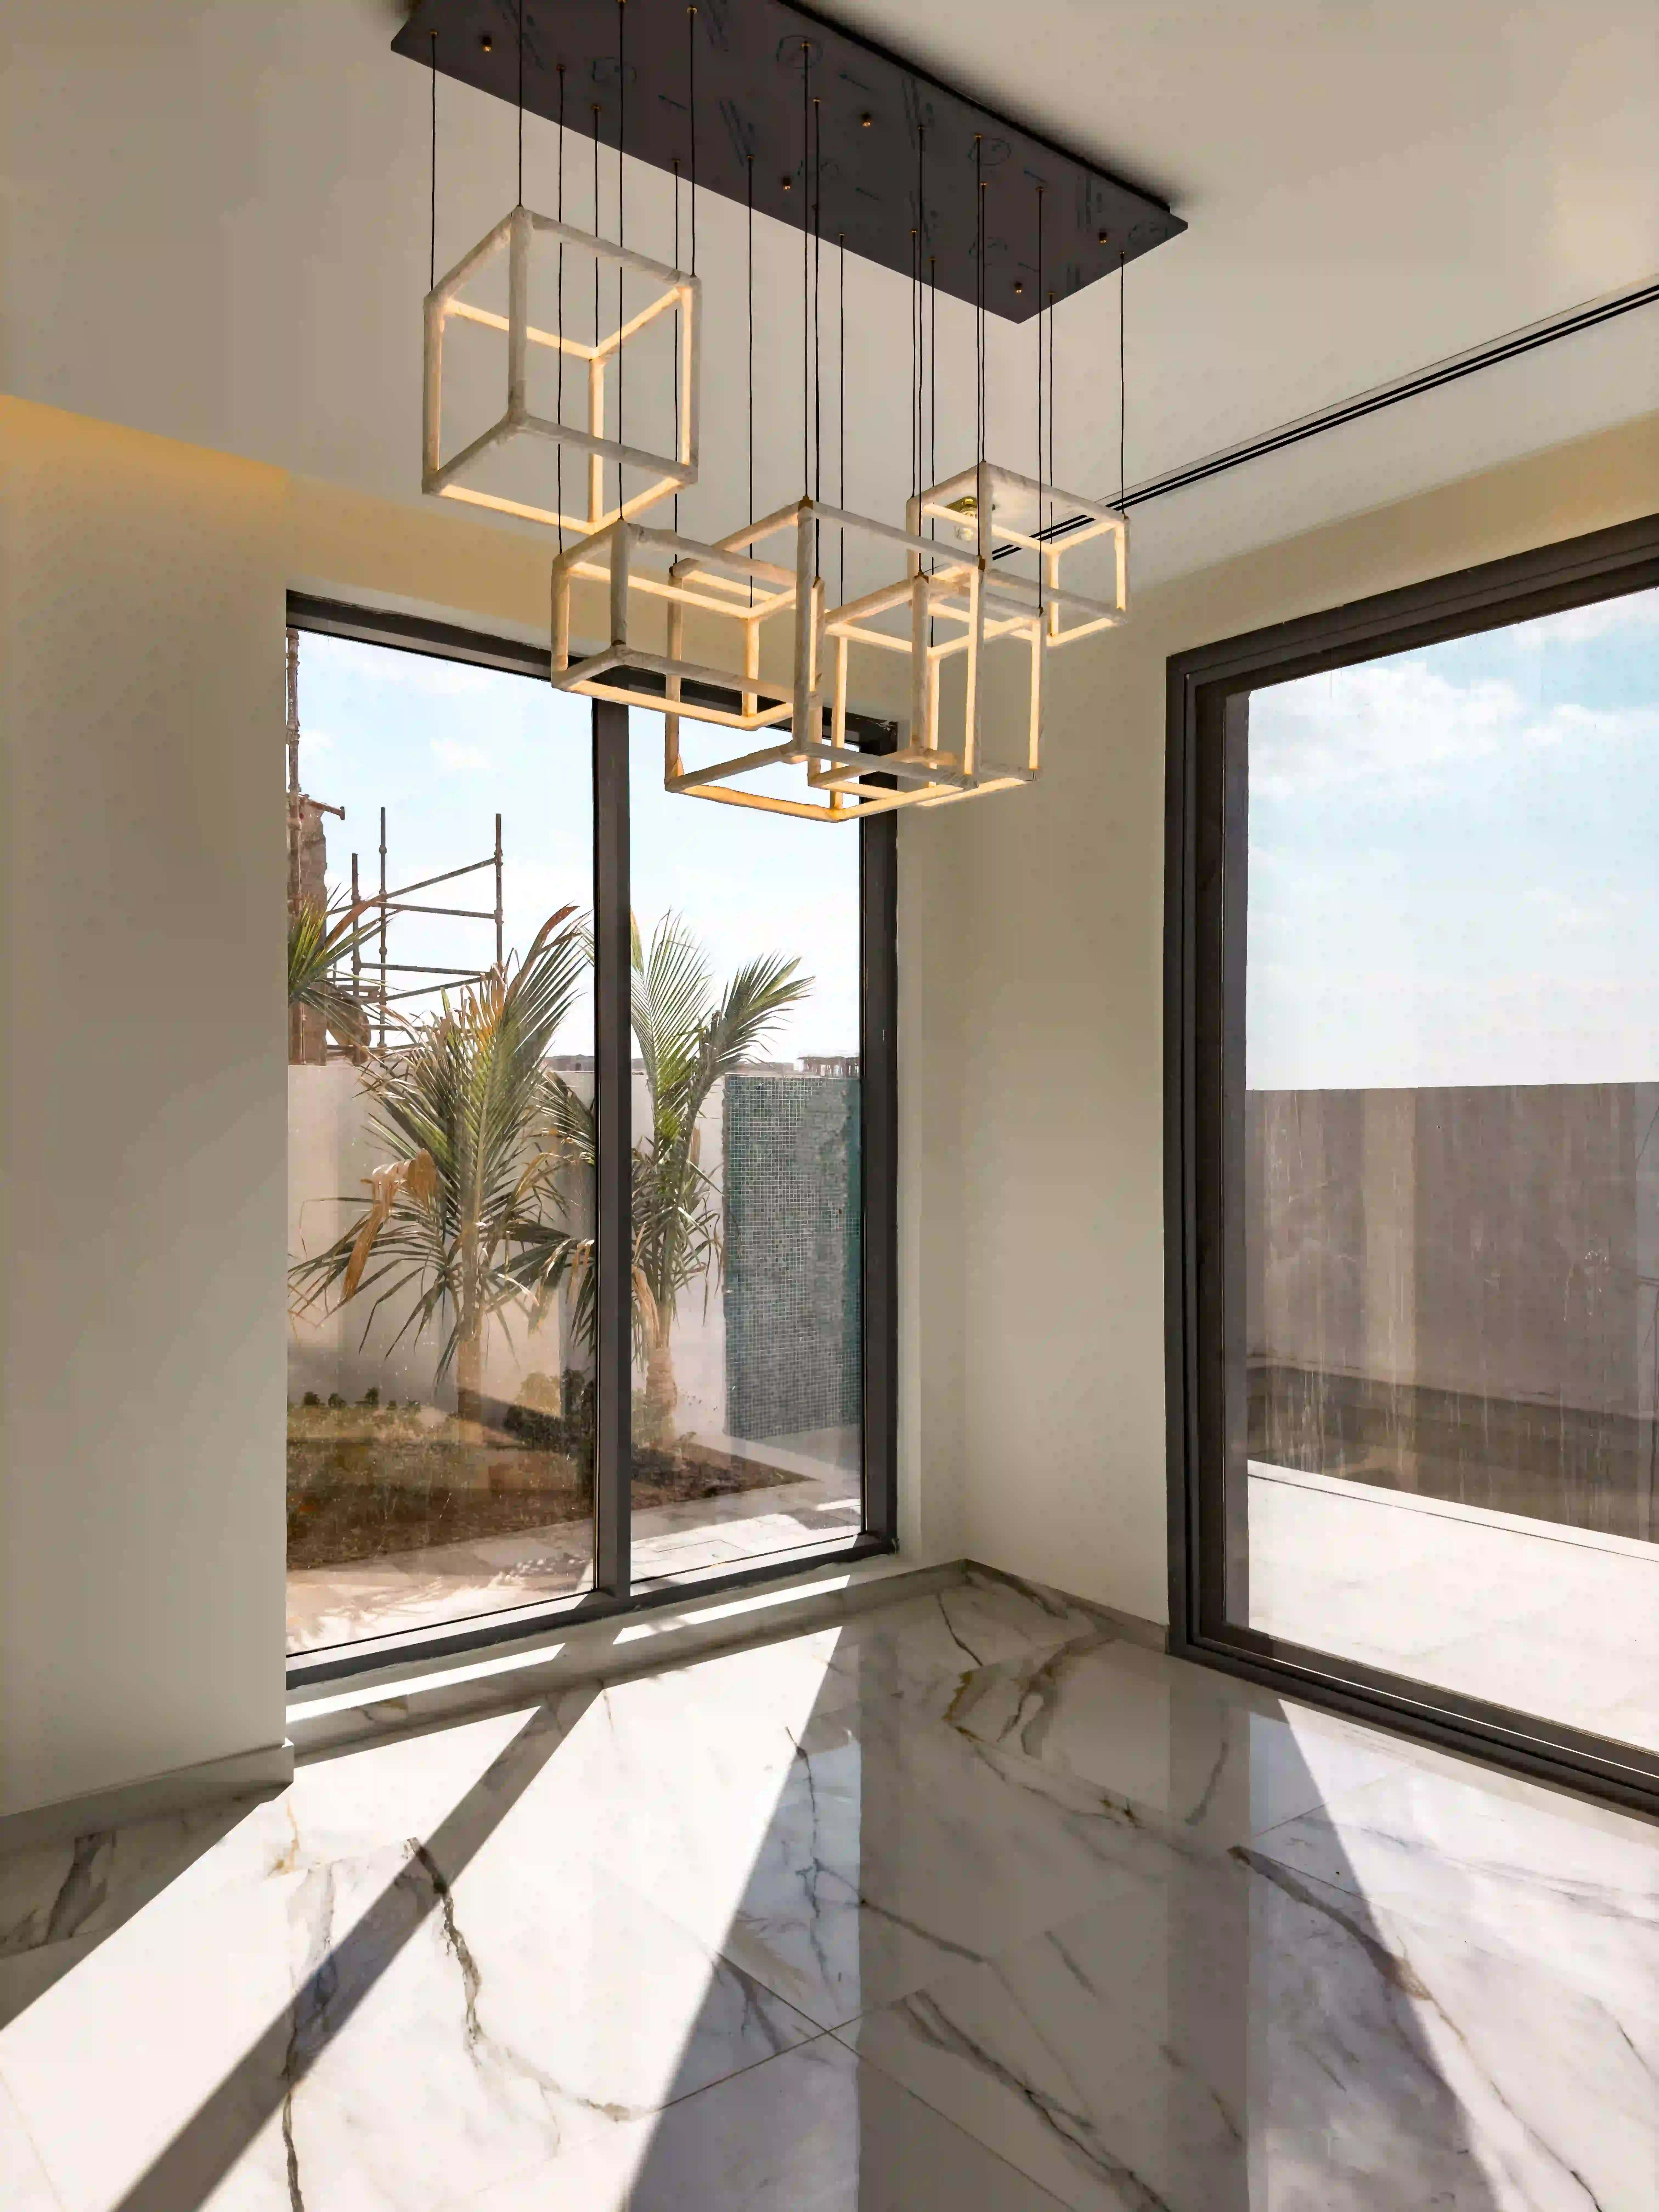 Dubai bedroom luxury villa with stunning living room and marble floors